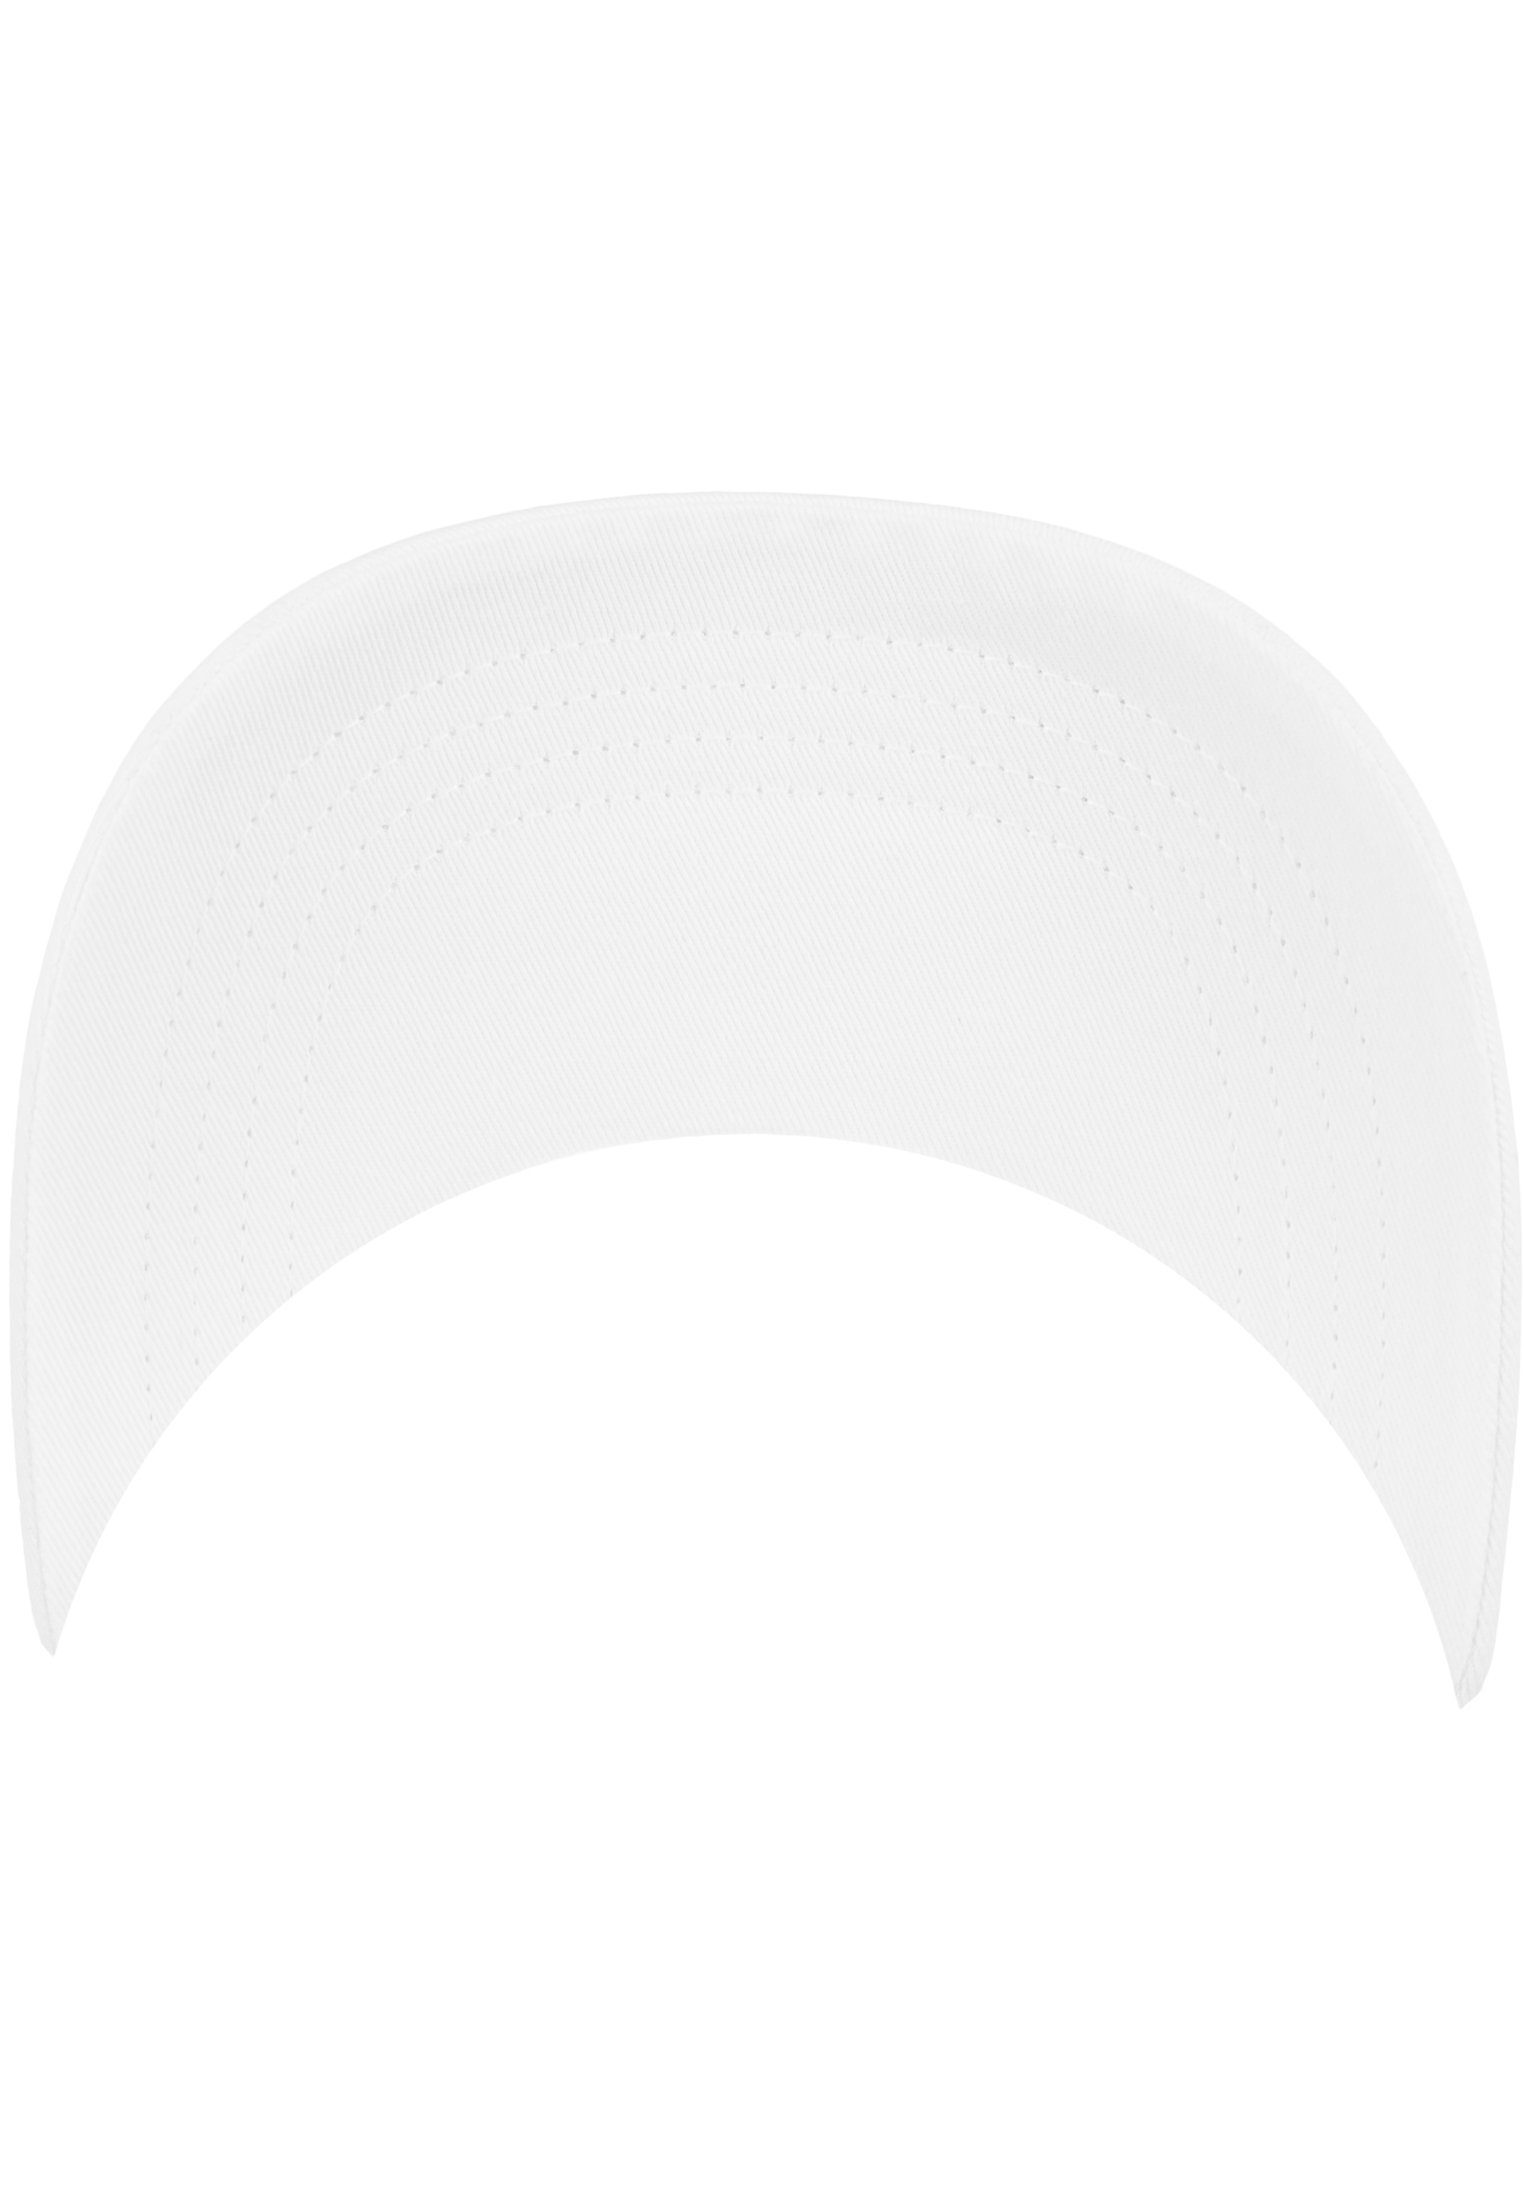 Flexfit Cap Flexfit 6245CM Twill Low Profile Flex White Cotton